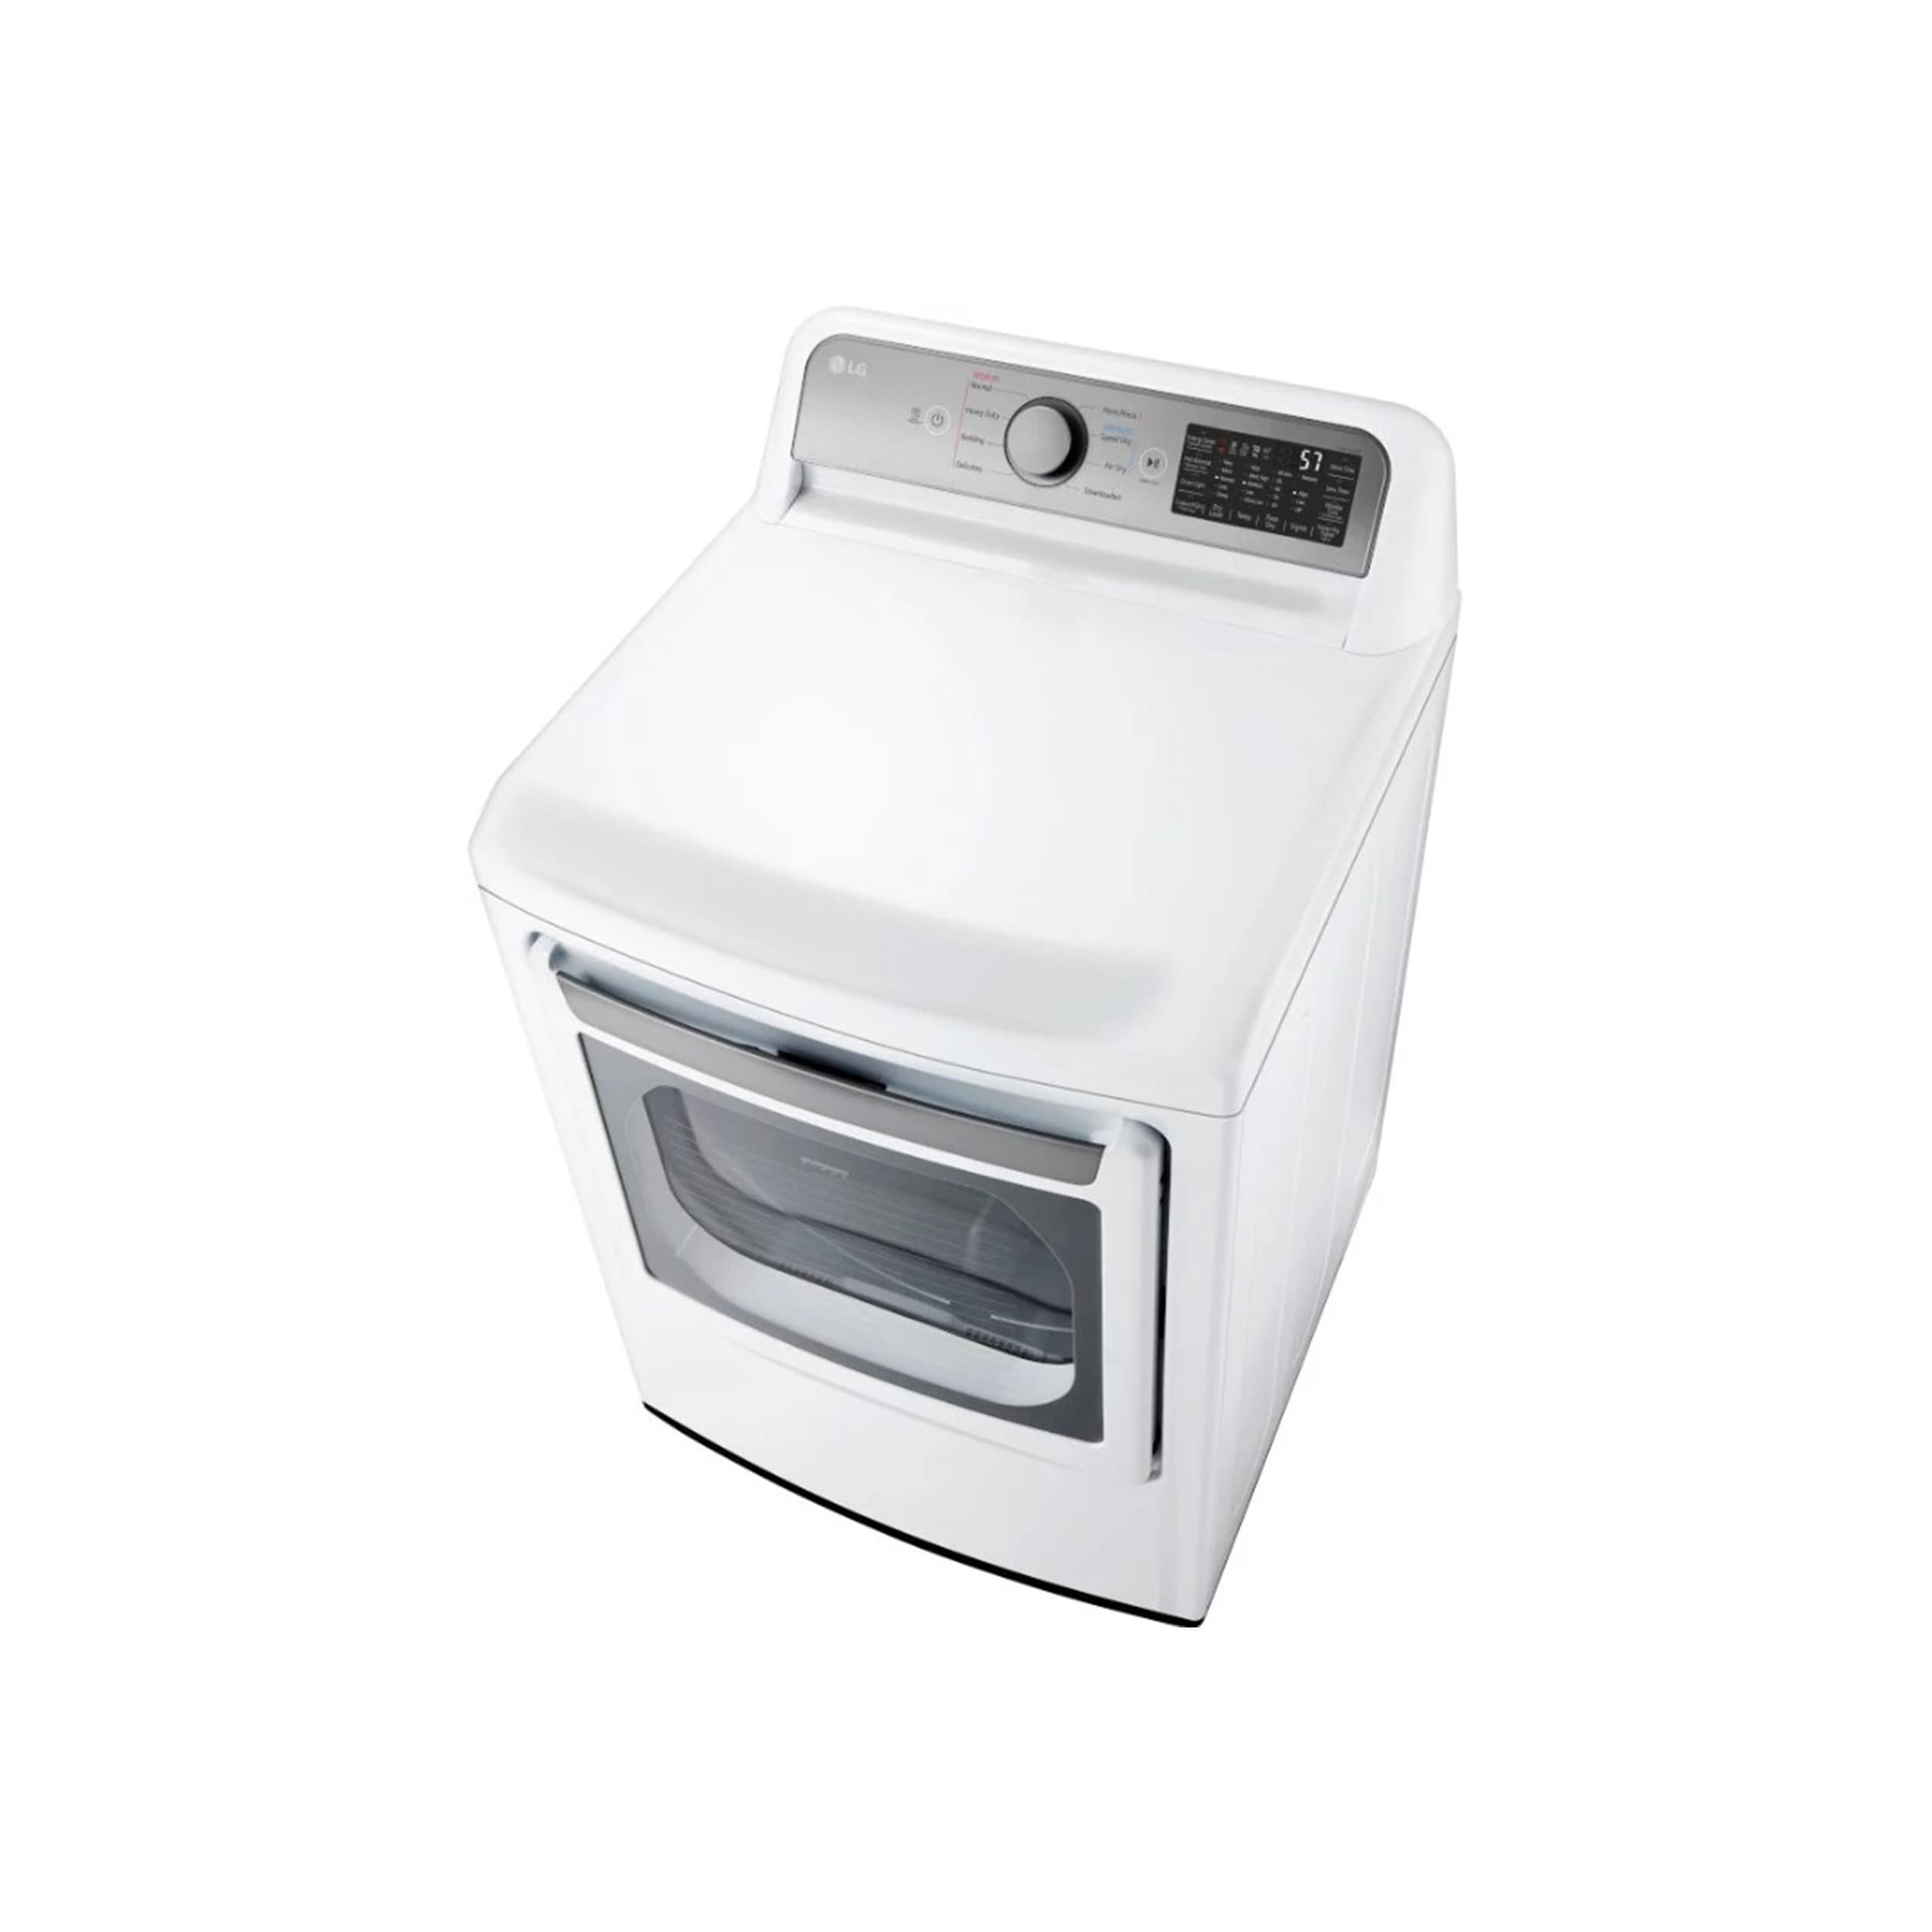  HOMCOM Automatic Dryer Machine, 1350W 3.22 Cu. Ft